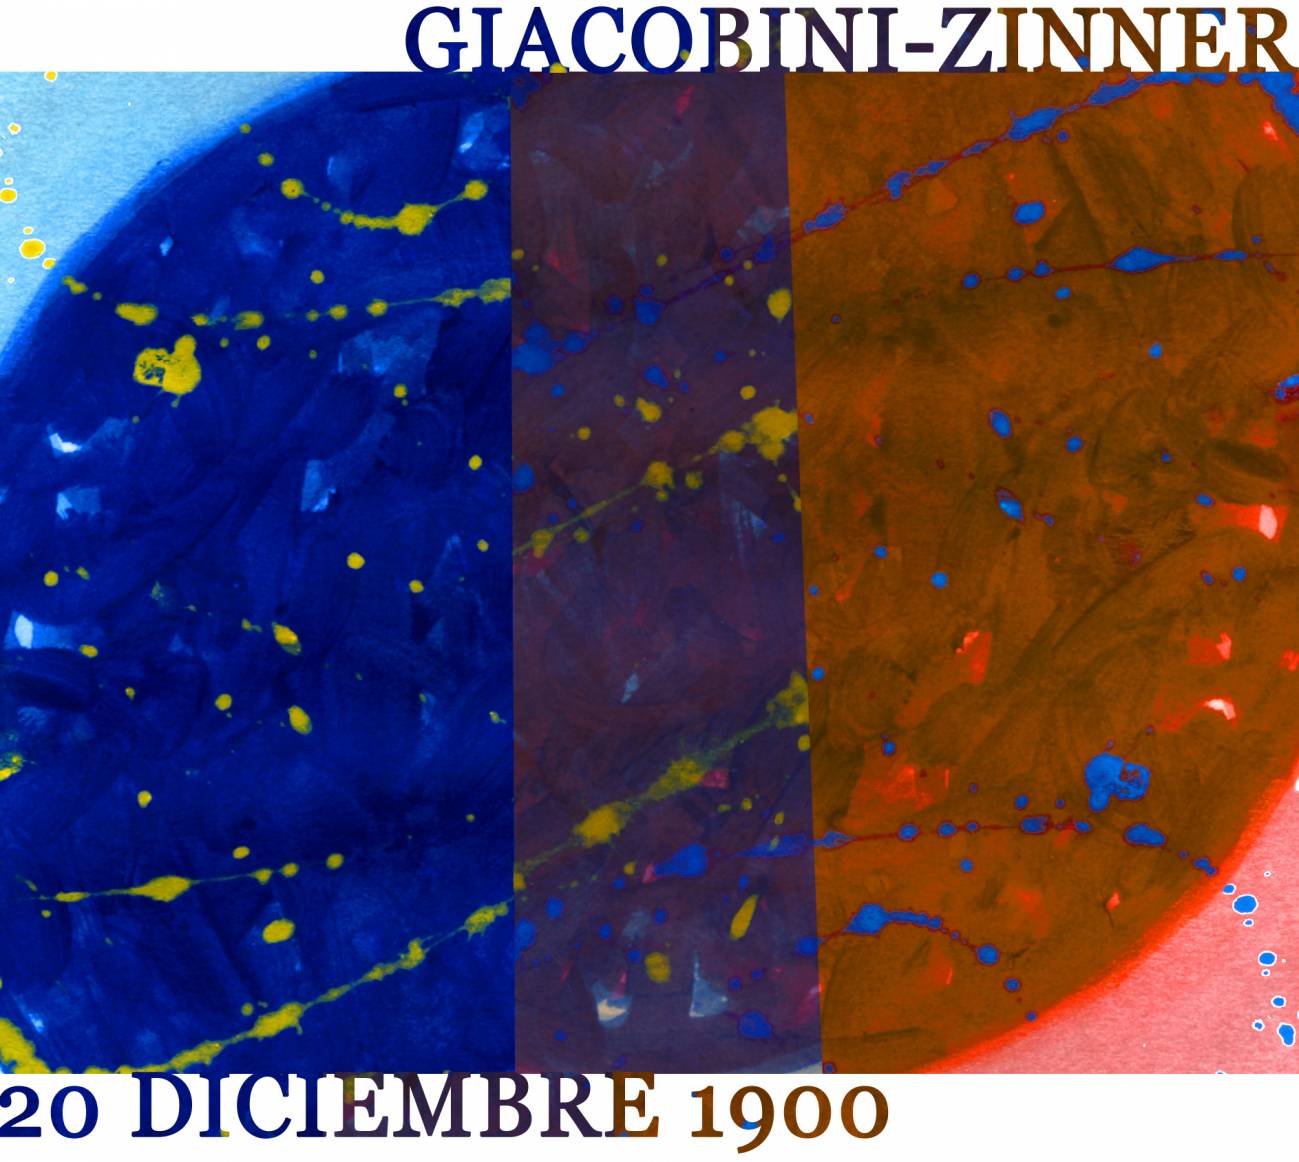 20 diciembre de 1900: el astrónomo Giacobini descubre el cometa bautizado como Giacobini-Zinner, el primero visitado por una sonda espacial, en 1985